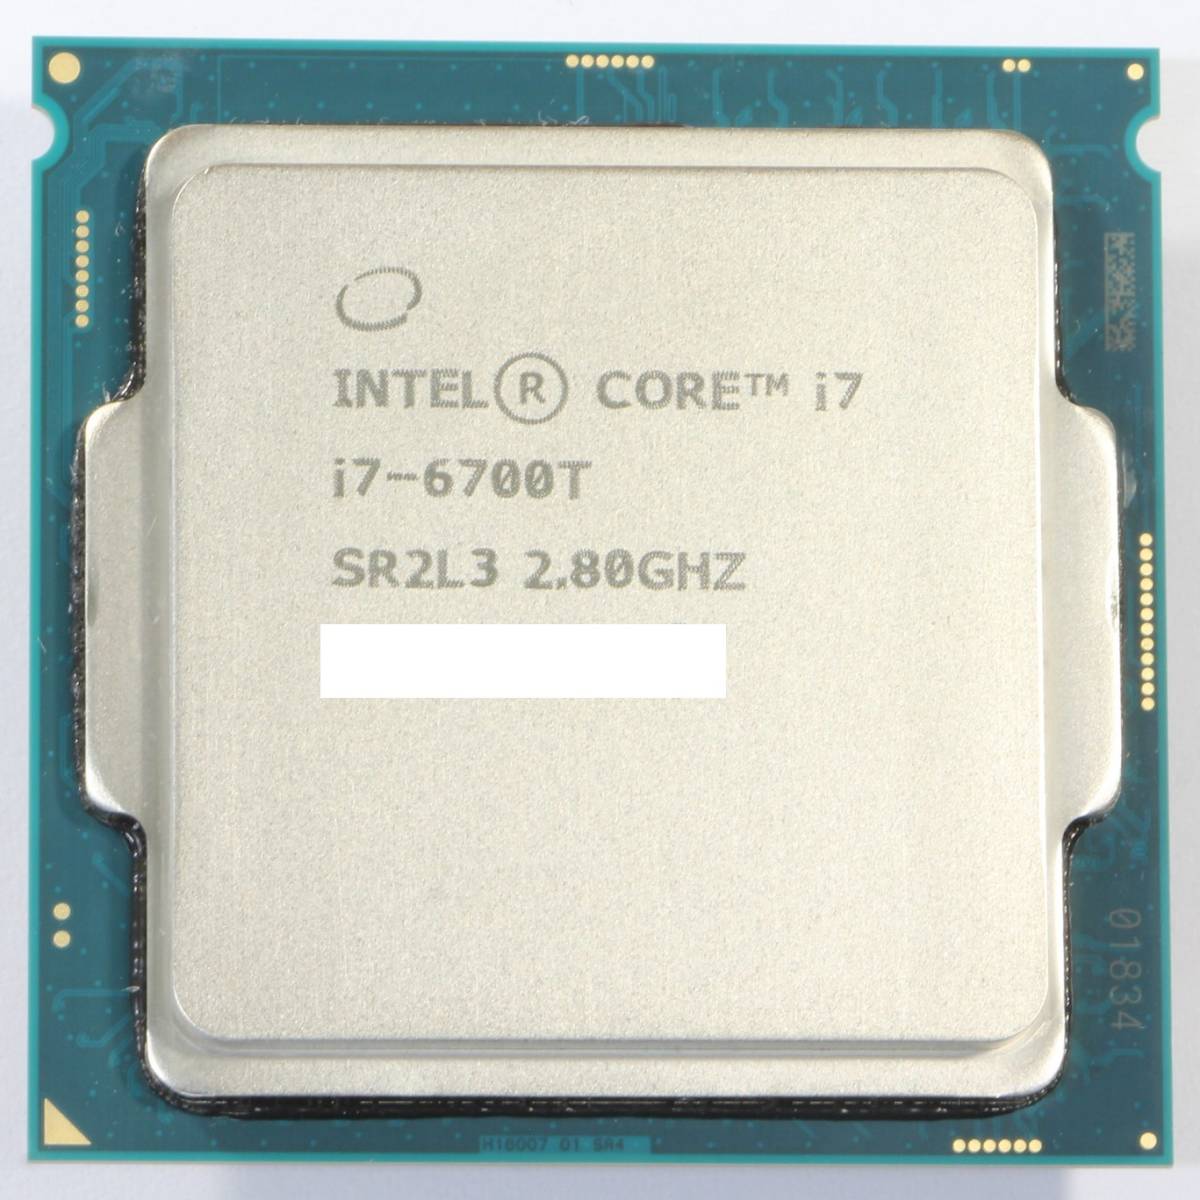 【中古CPU】Intel Core i7-6700T 2.8GHz TB 3.6GHz SR2L3 Socket 1151 4コア8スレッド _画像1